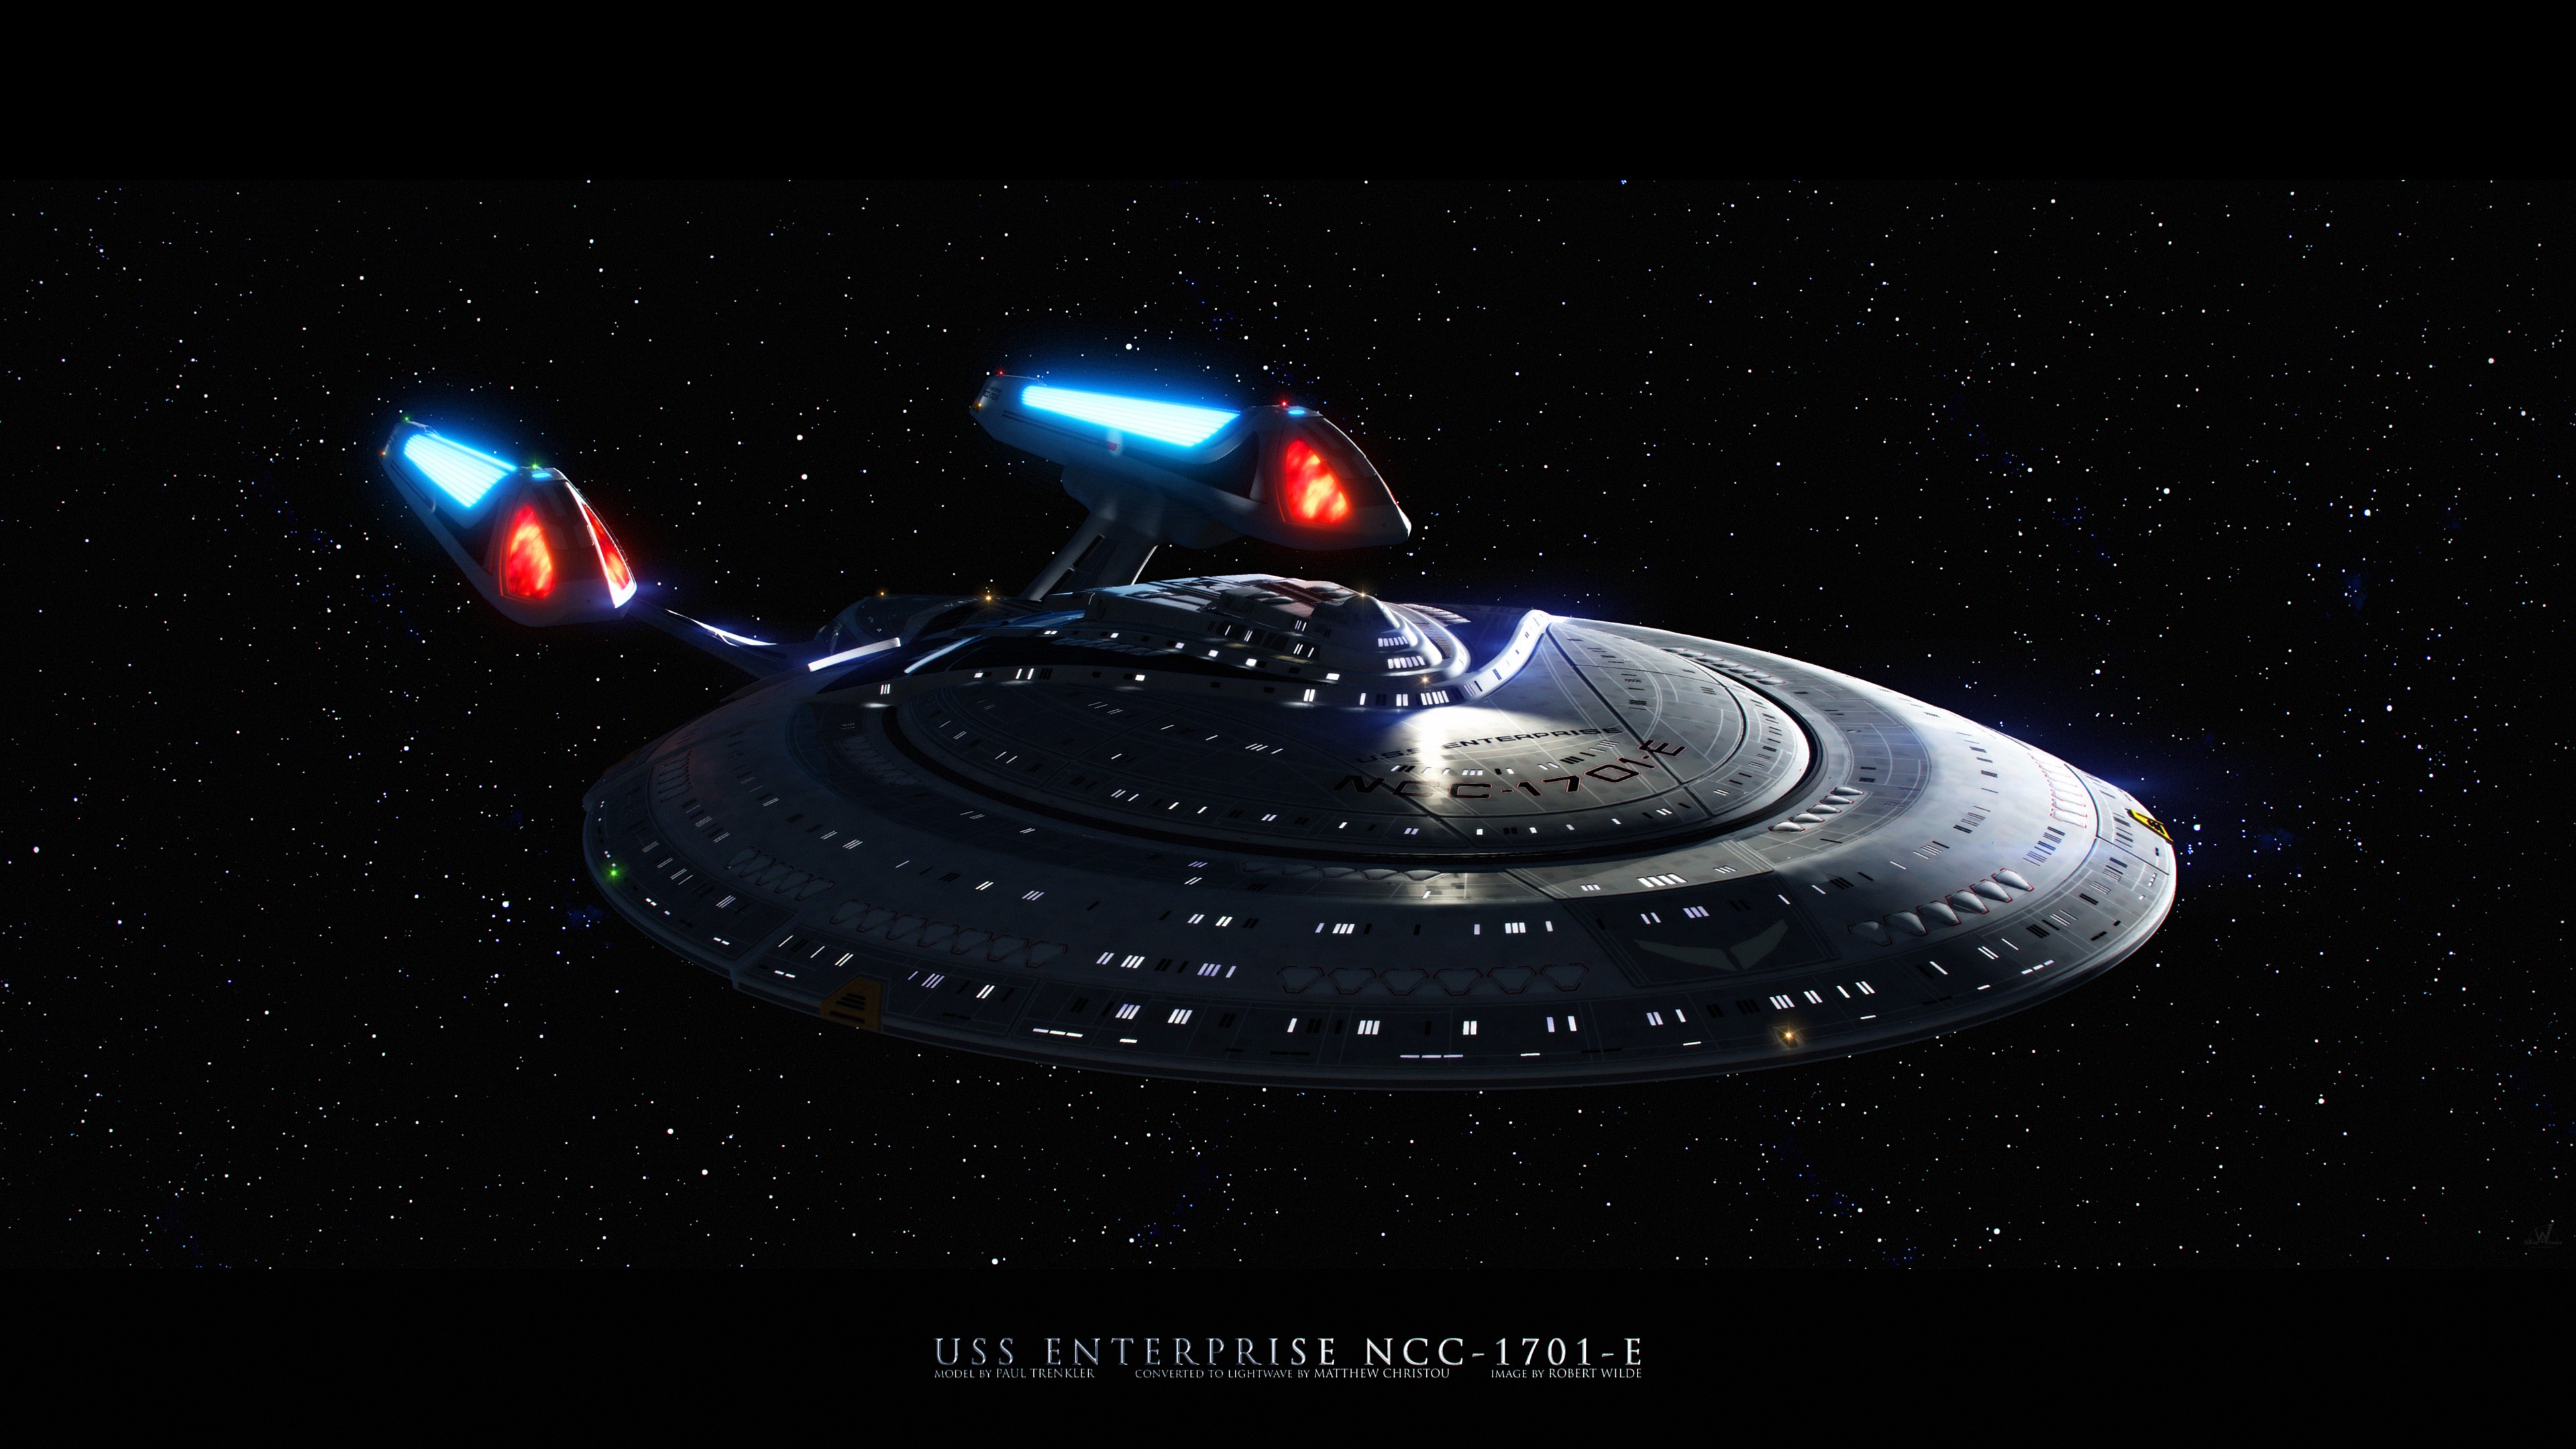 Space Star Trek Spaceship USS Enterprise Spaceship Dark 3840x2160